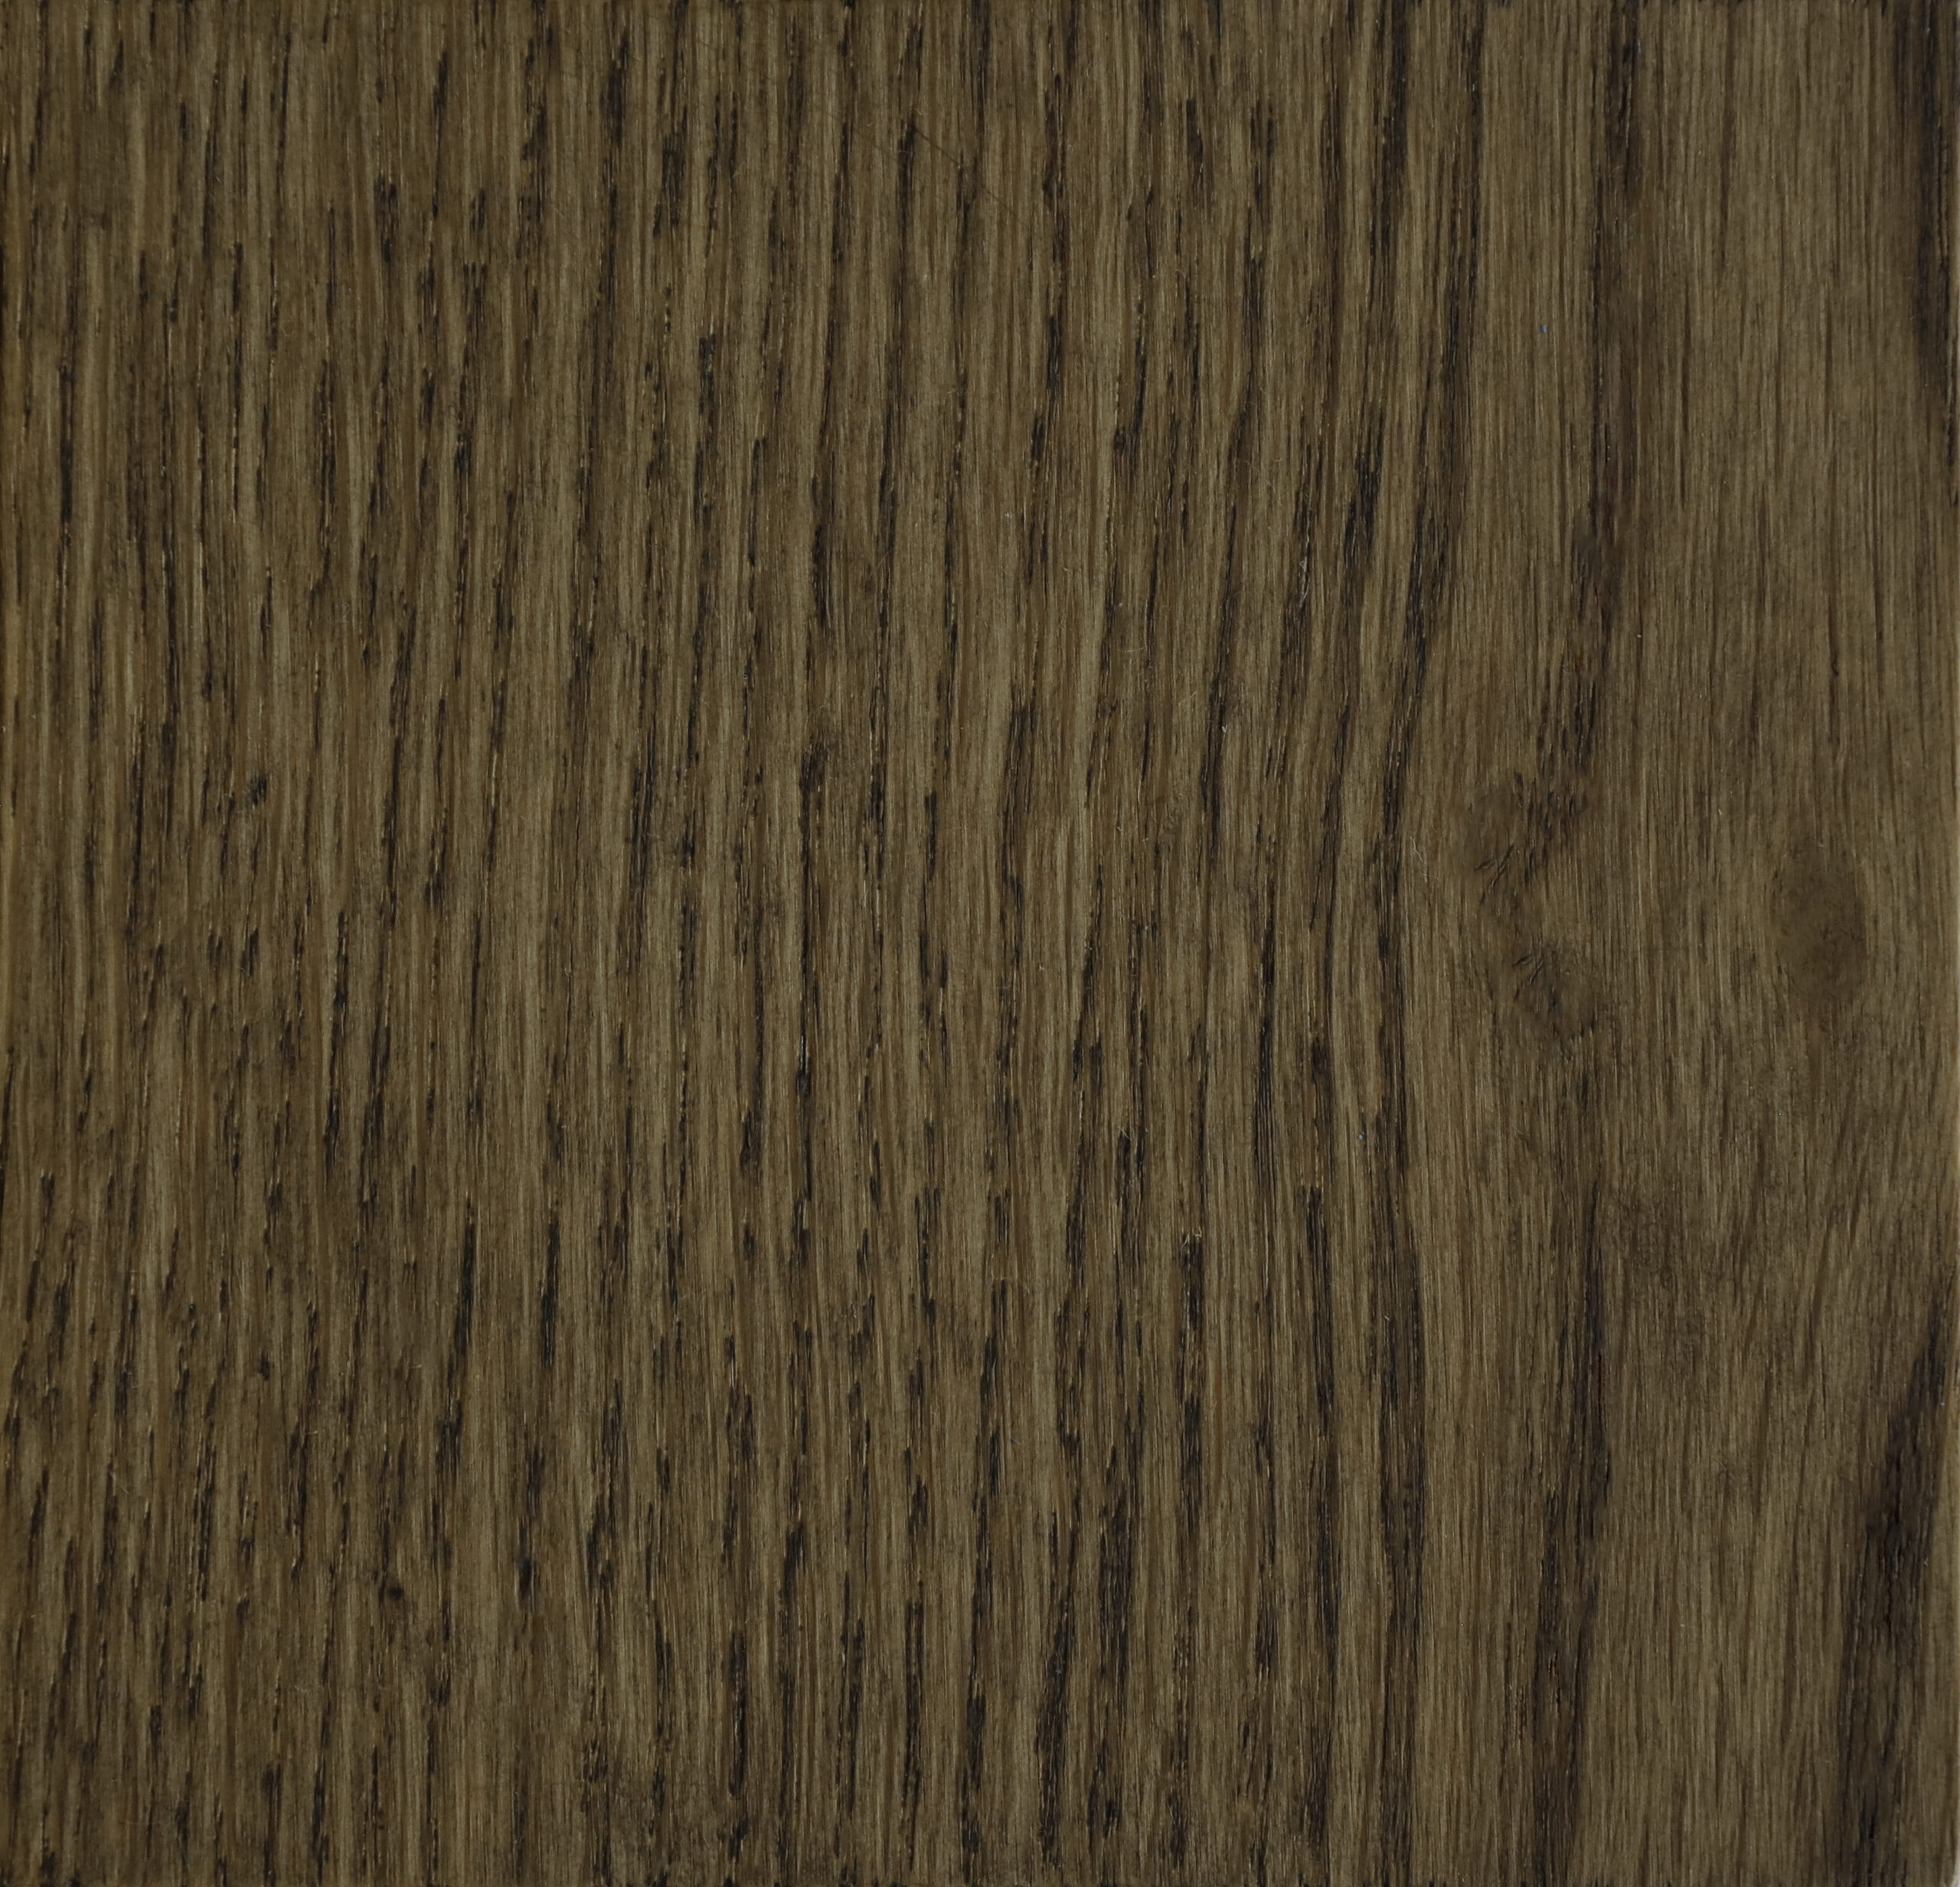 kleurstaal bear de houtfabriek houten vloeren